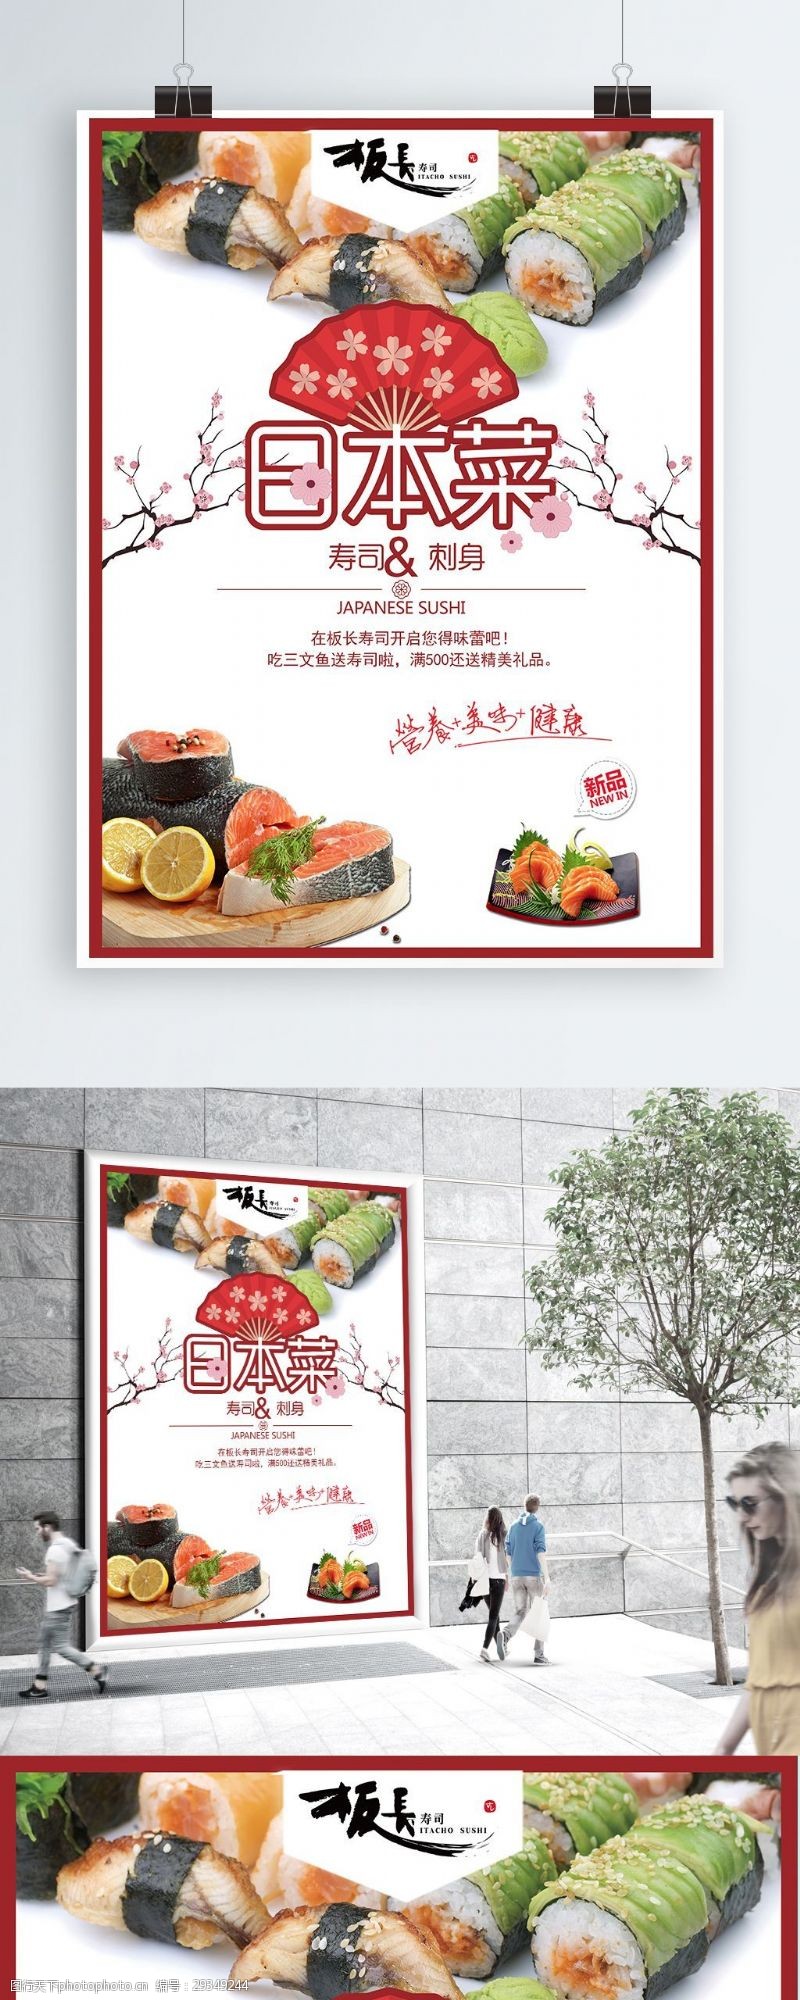 樱花旅游日系美食日本菜寿司刺身促销海报